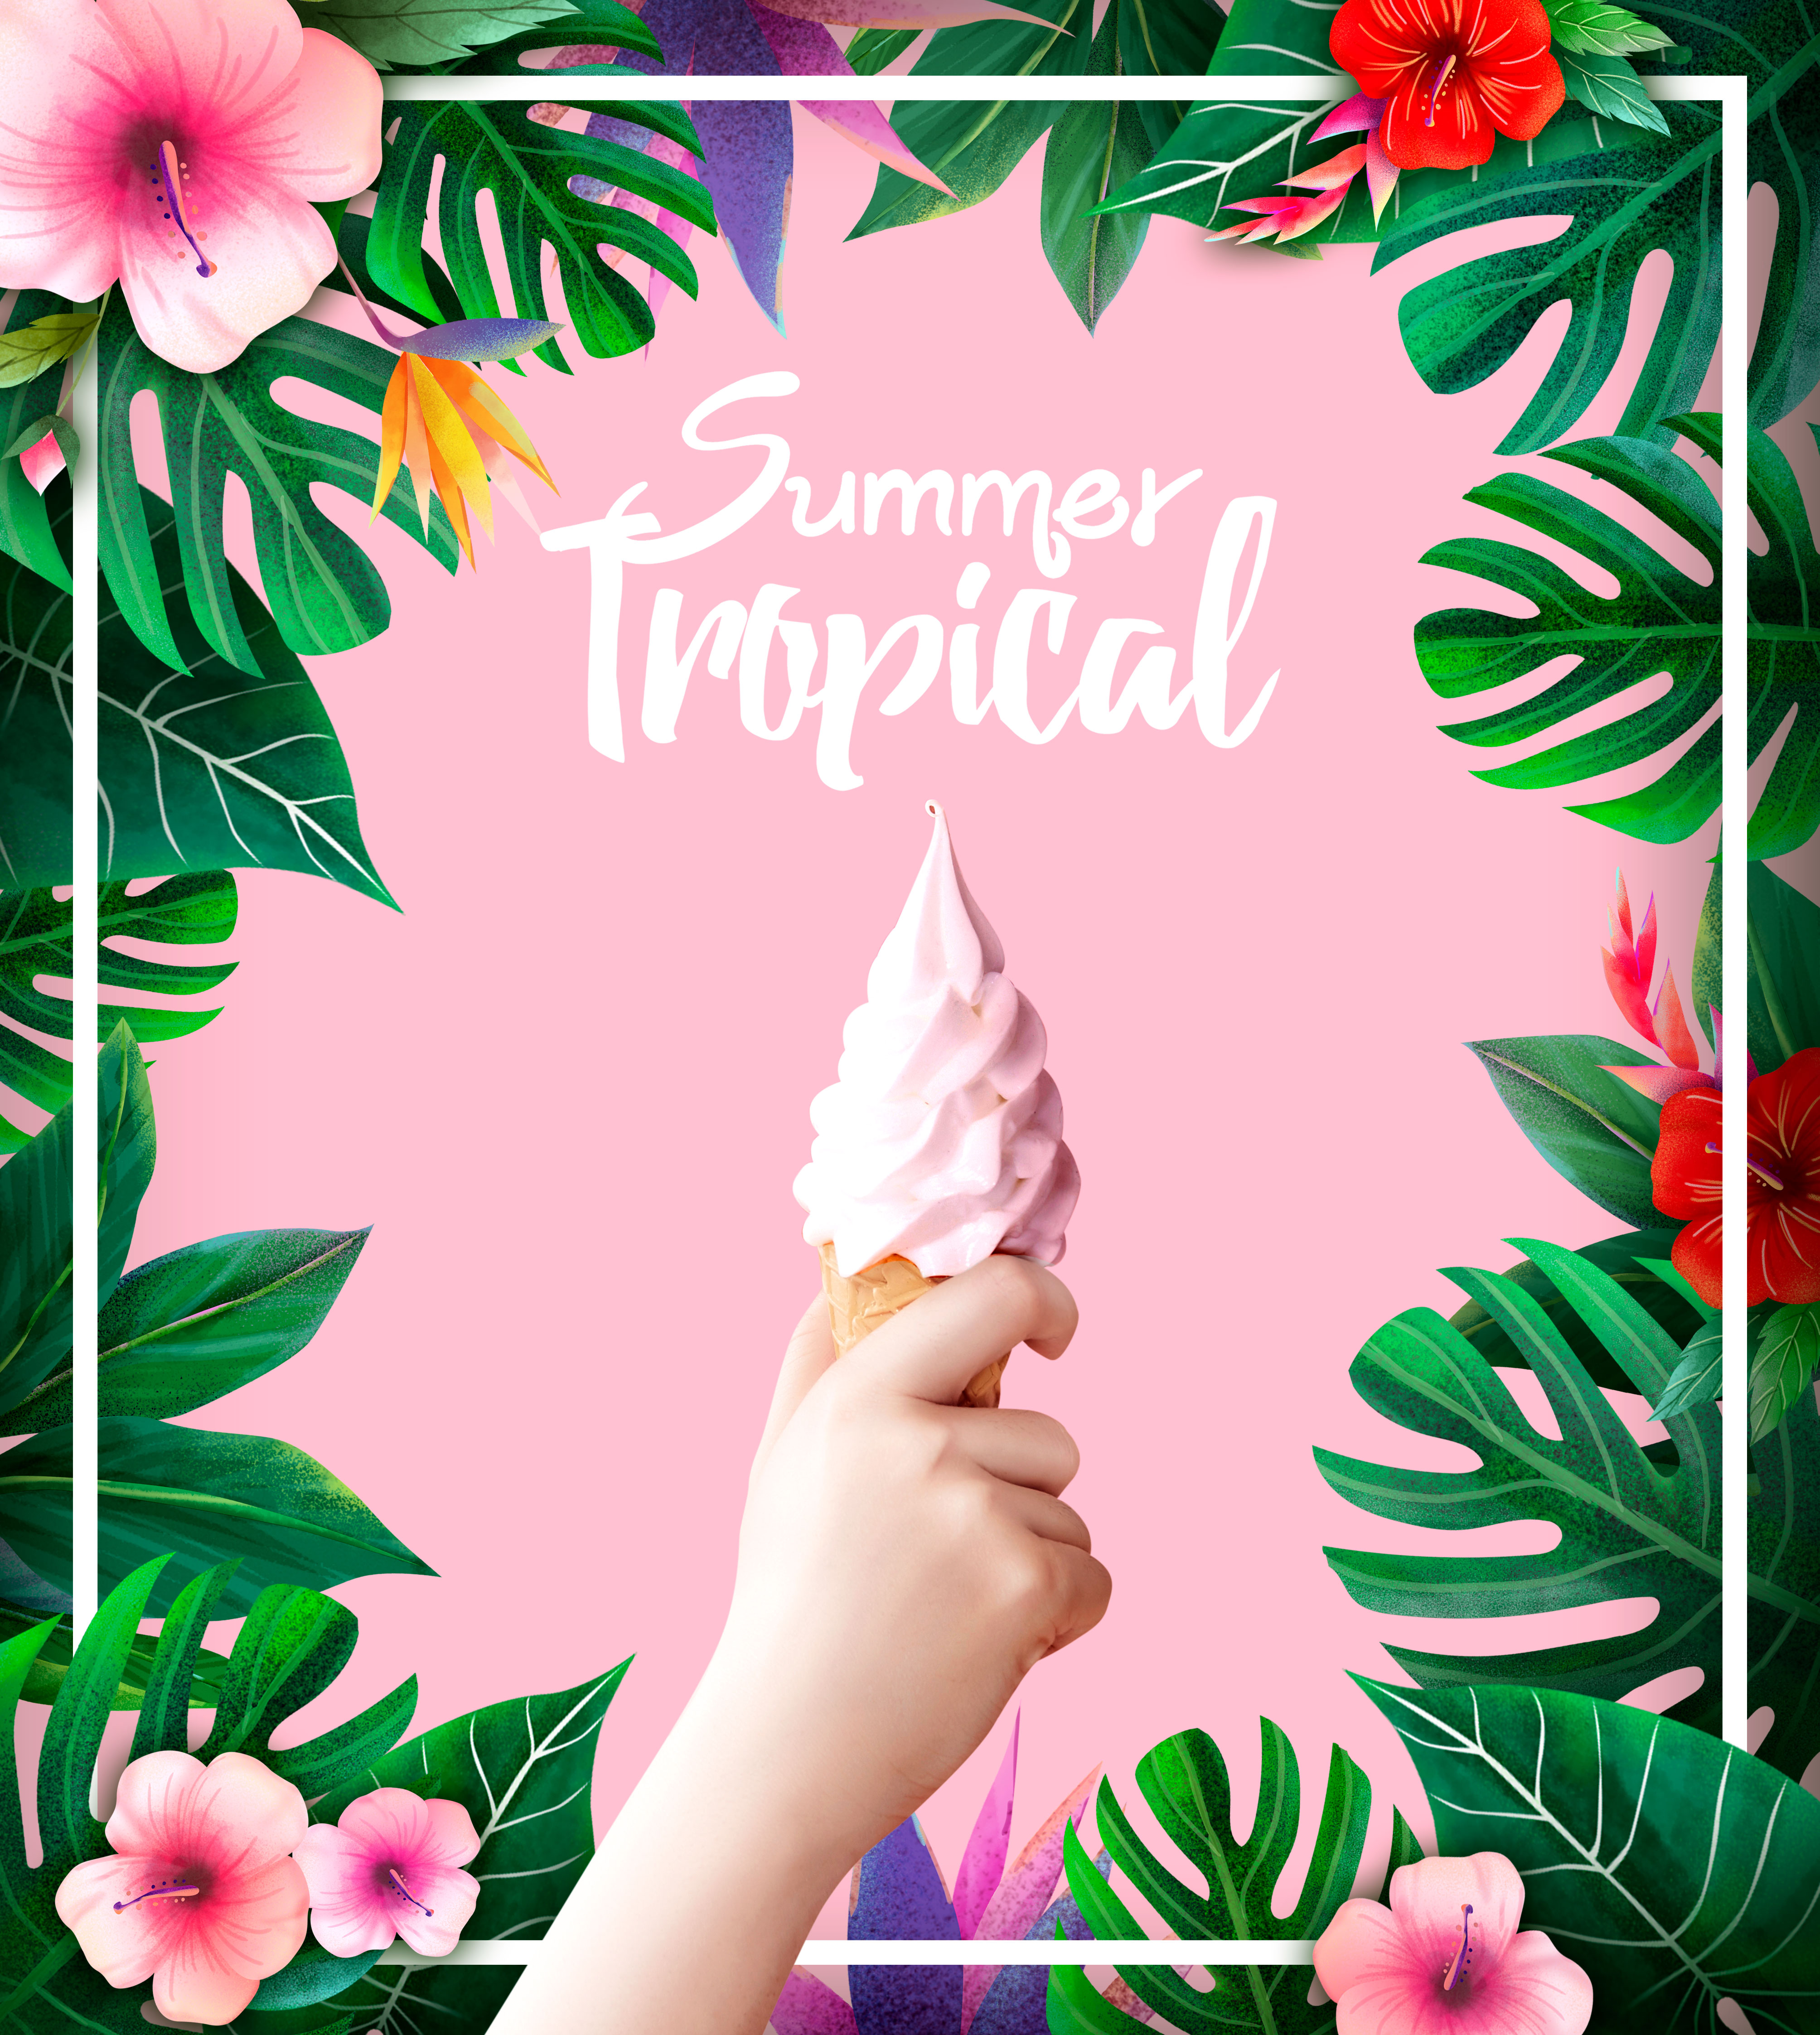 热带植物装饰夏季主题海报设计套装插图(2)